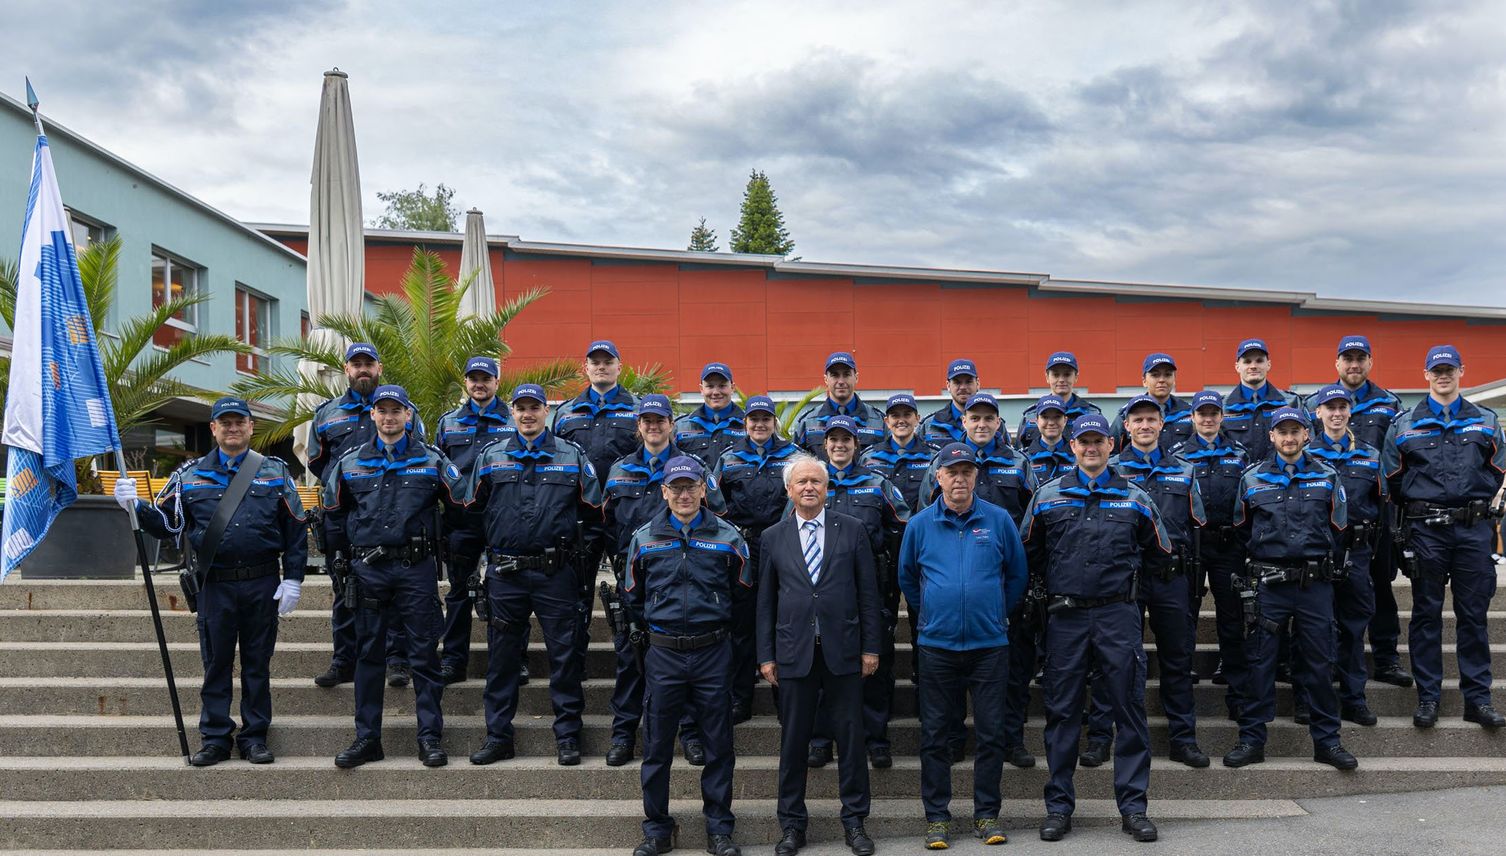 Kanton Luzern vereidigt 23 Polizistinnen und Polizisten